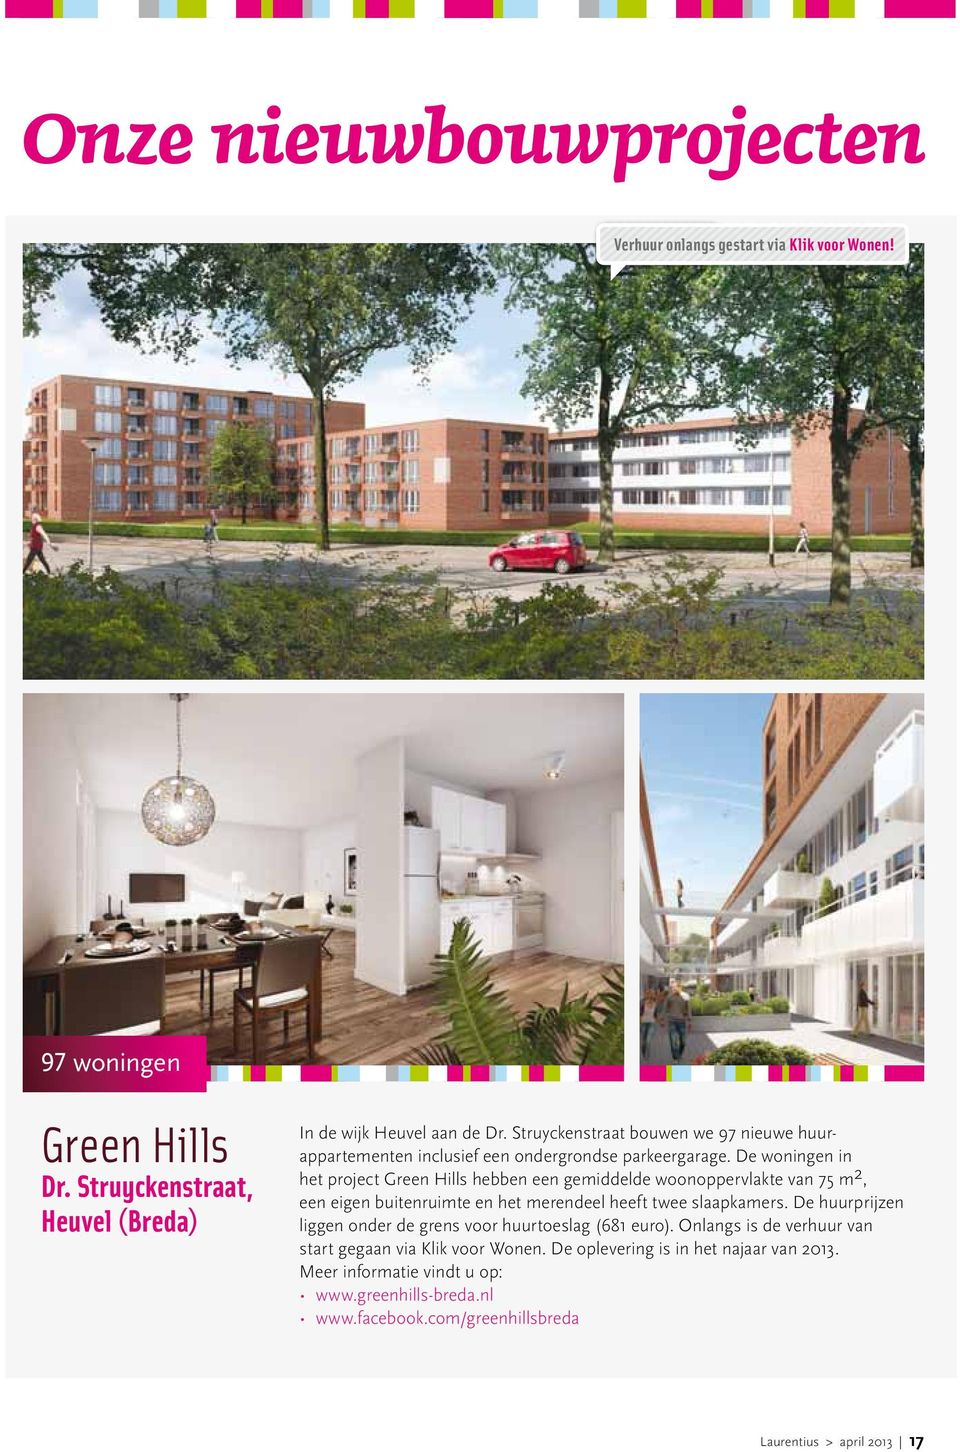 De woningen in het project Green Hills hebben een gemiddelde woonoppervlakte van 75 m 2, een eigen buitenruimte en het merendeel heeft twee slaapkamers.